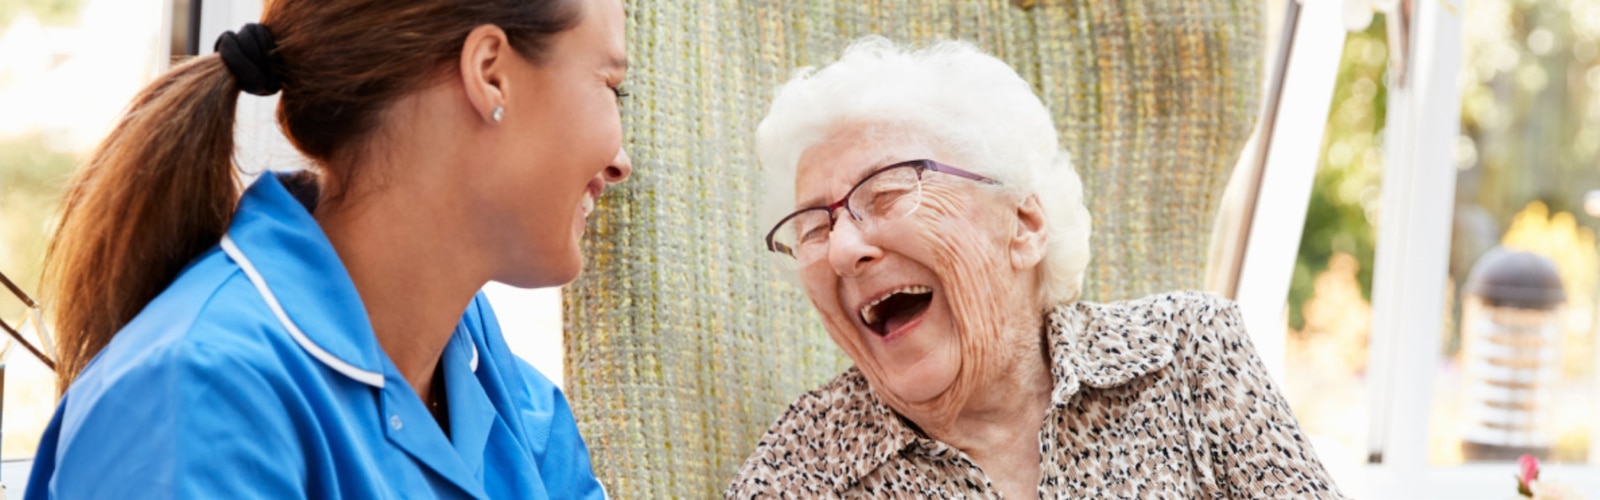 En sköterska och en äldre kvinna som skrattar